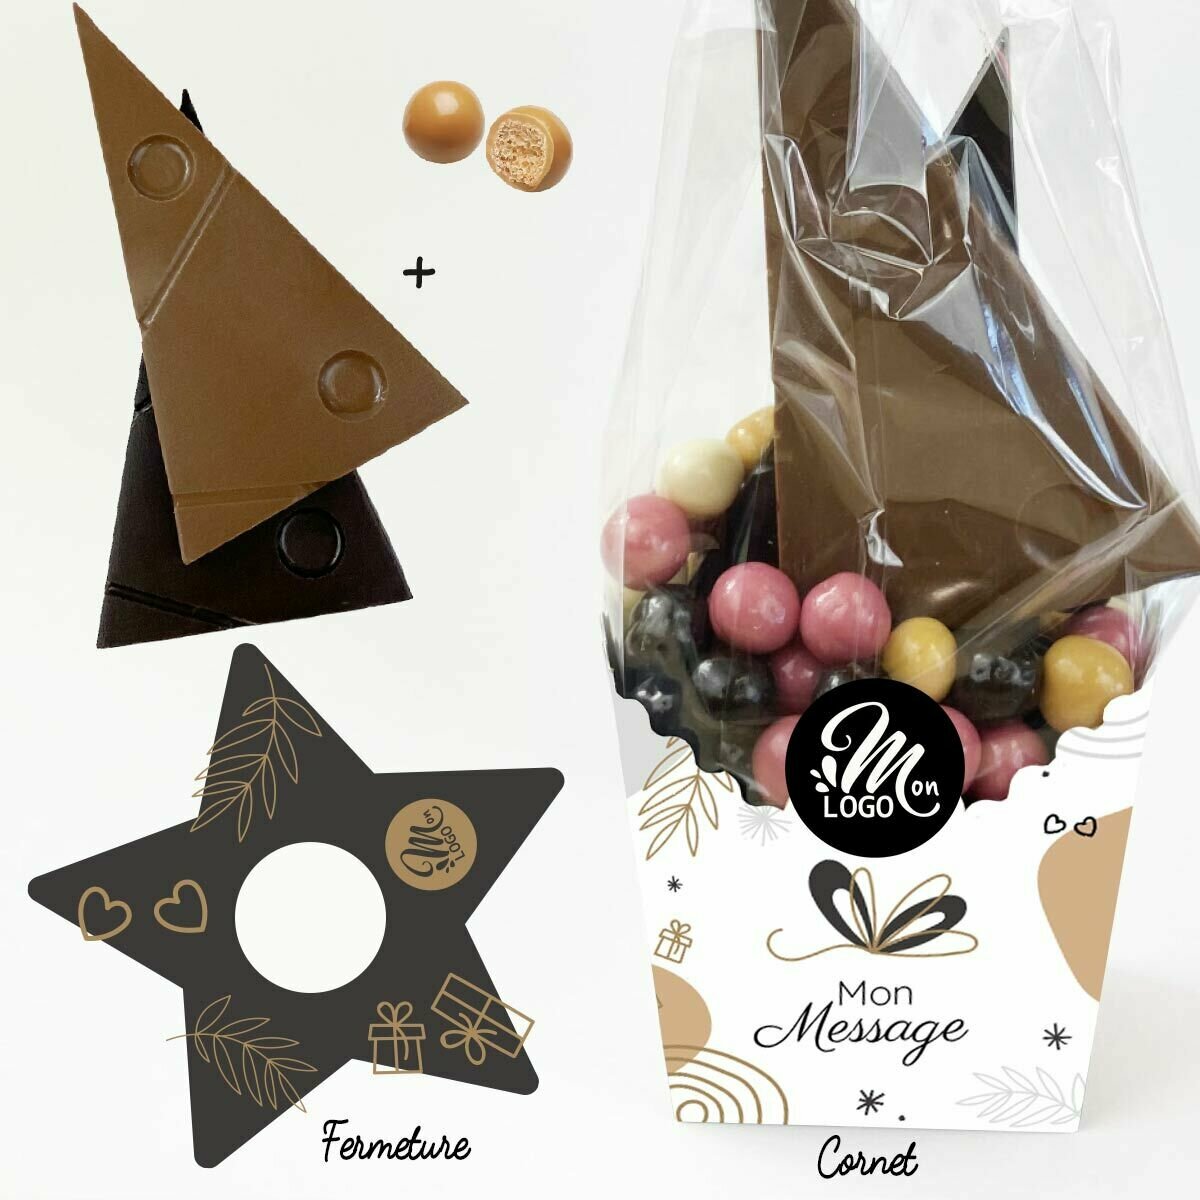 Cornet Chocolat pour Entreprise Thème Personnalisable Logo et Message